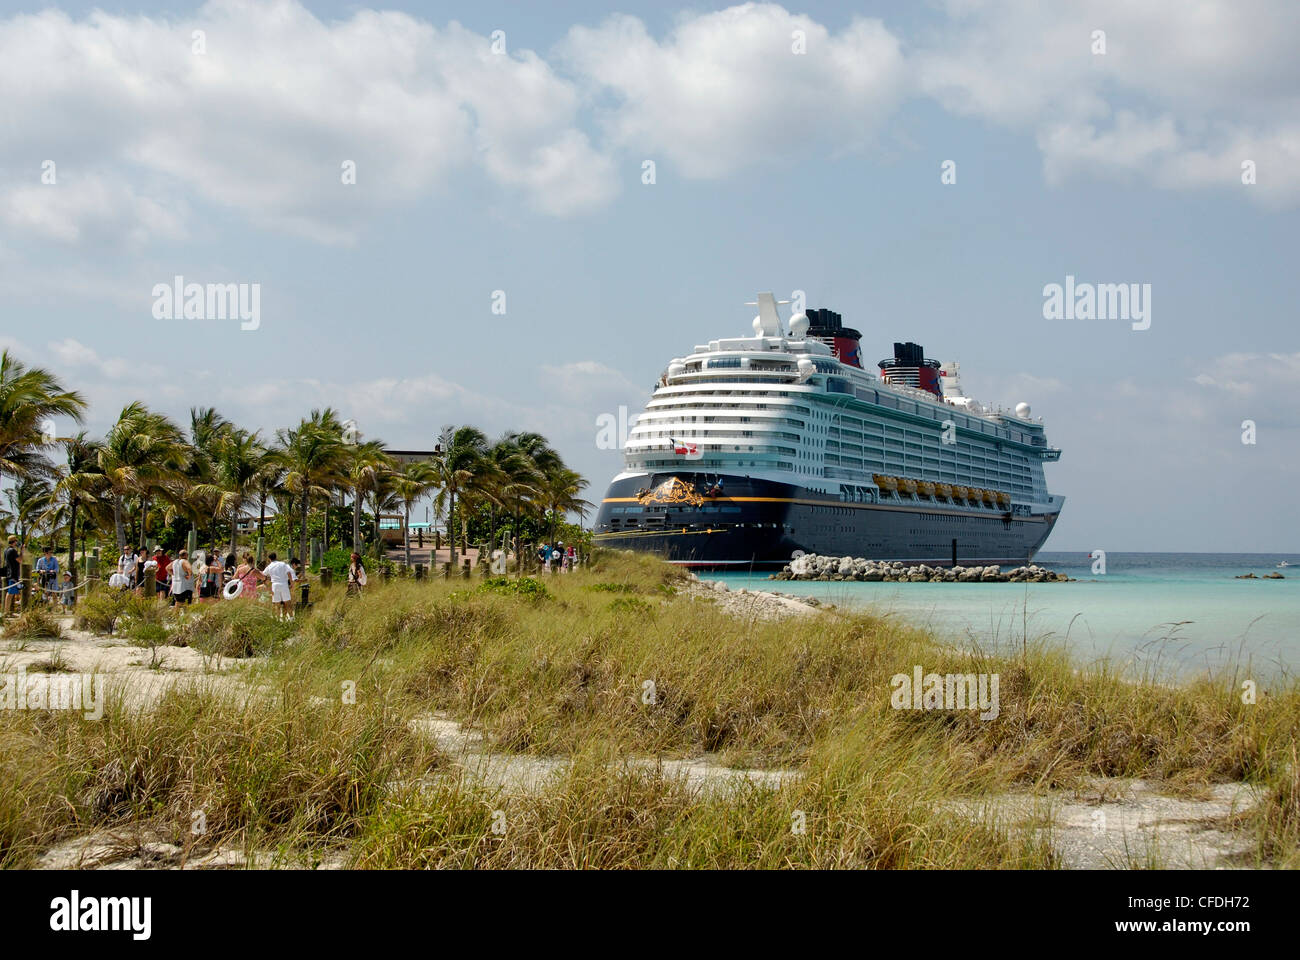 Dans l'Bahames Castaway Cay sur la ligne de croisière de Disney's Disney Dream Cruise Ship Banque D'Images